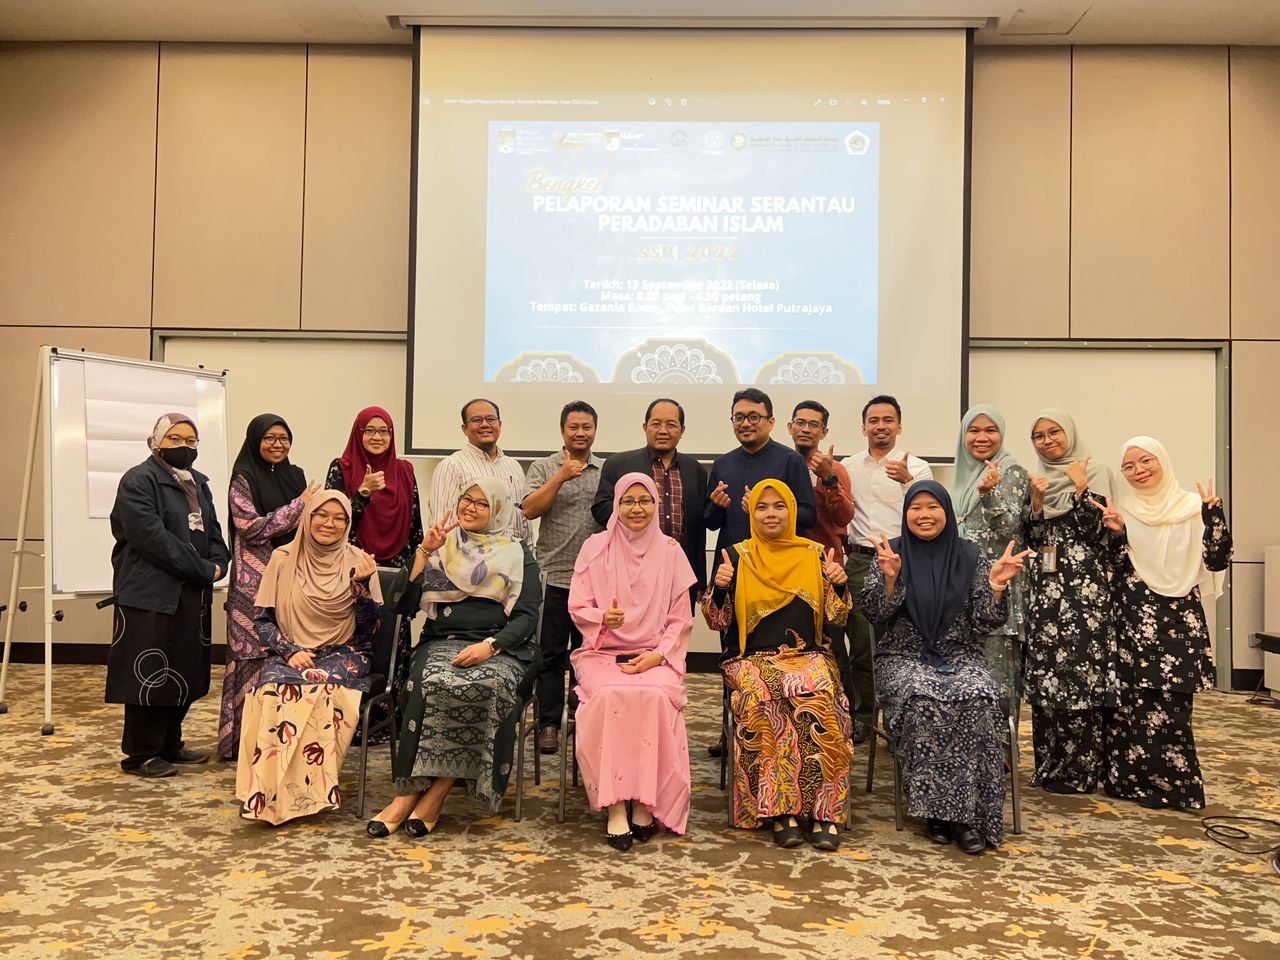 Bengkel Pelaporan Seminar Serantau Peradaban Islam 2022 pic2